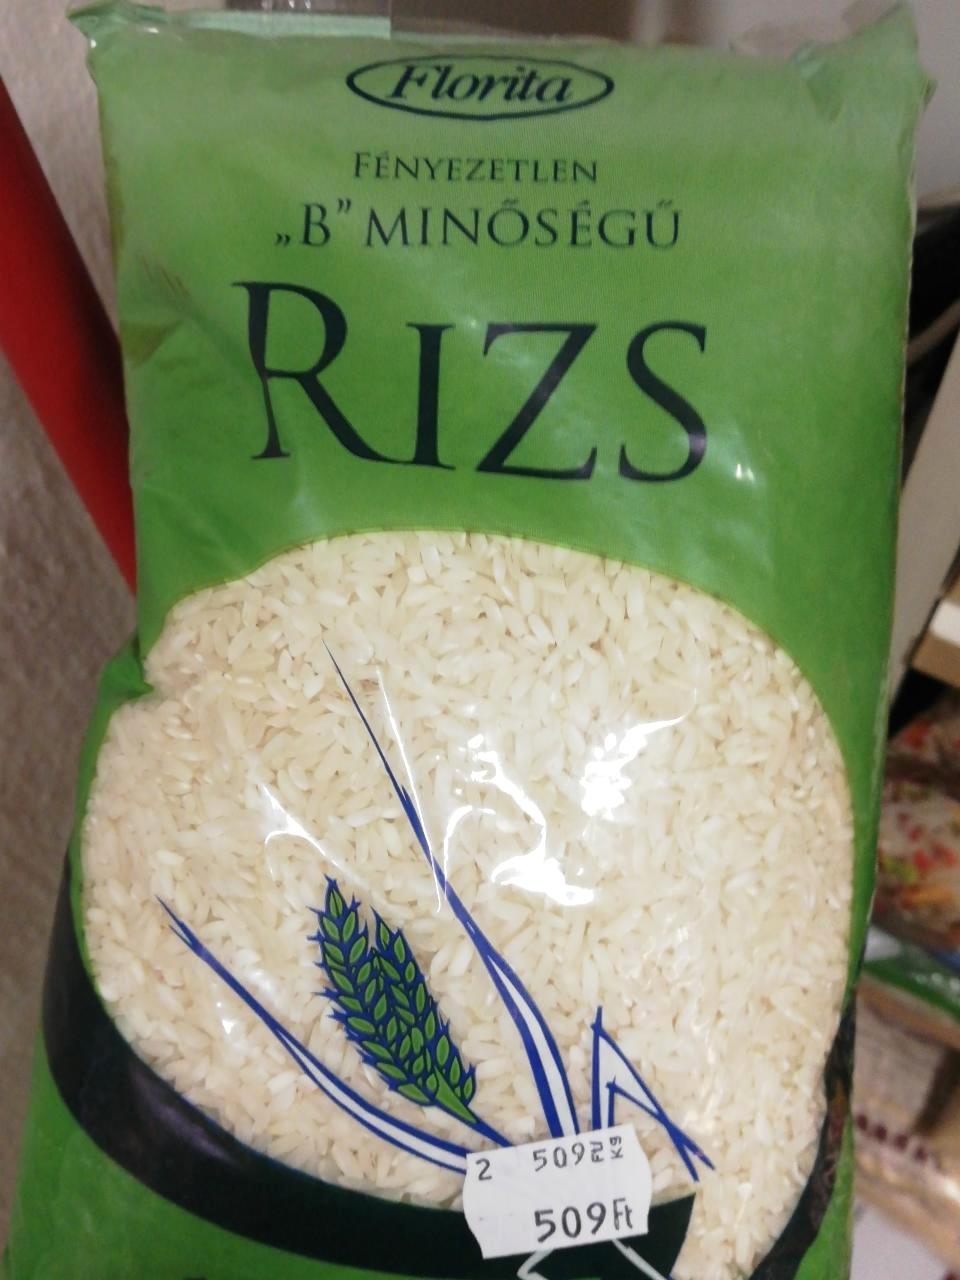 Képek - Fényezetlen B minőségű rizs Florita